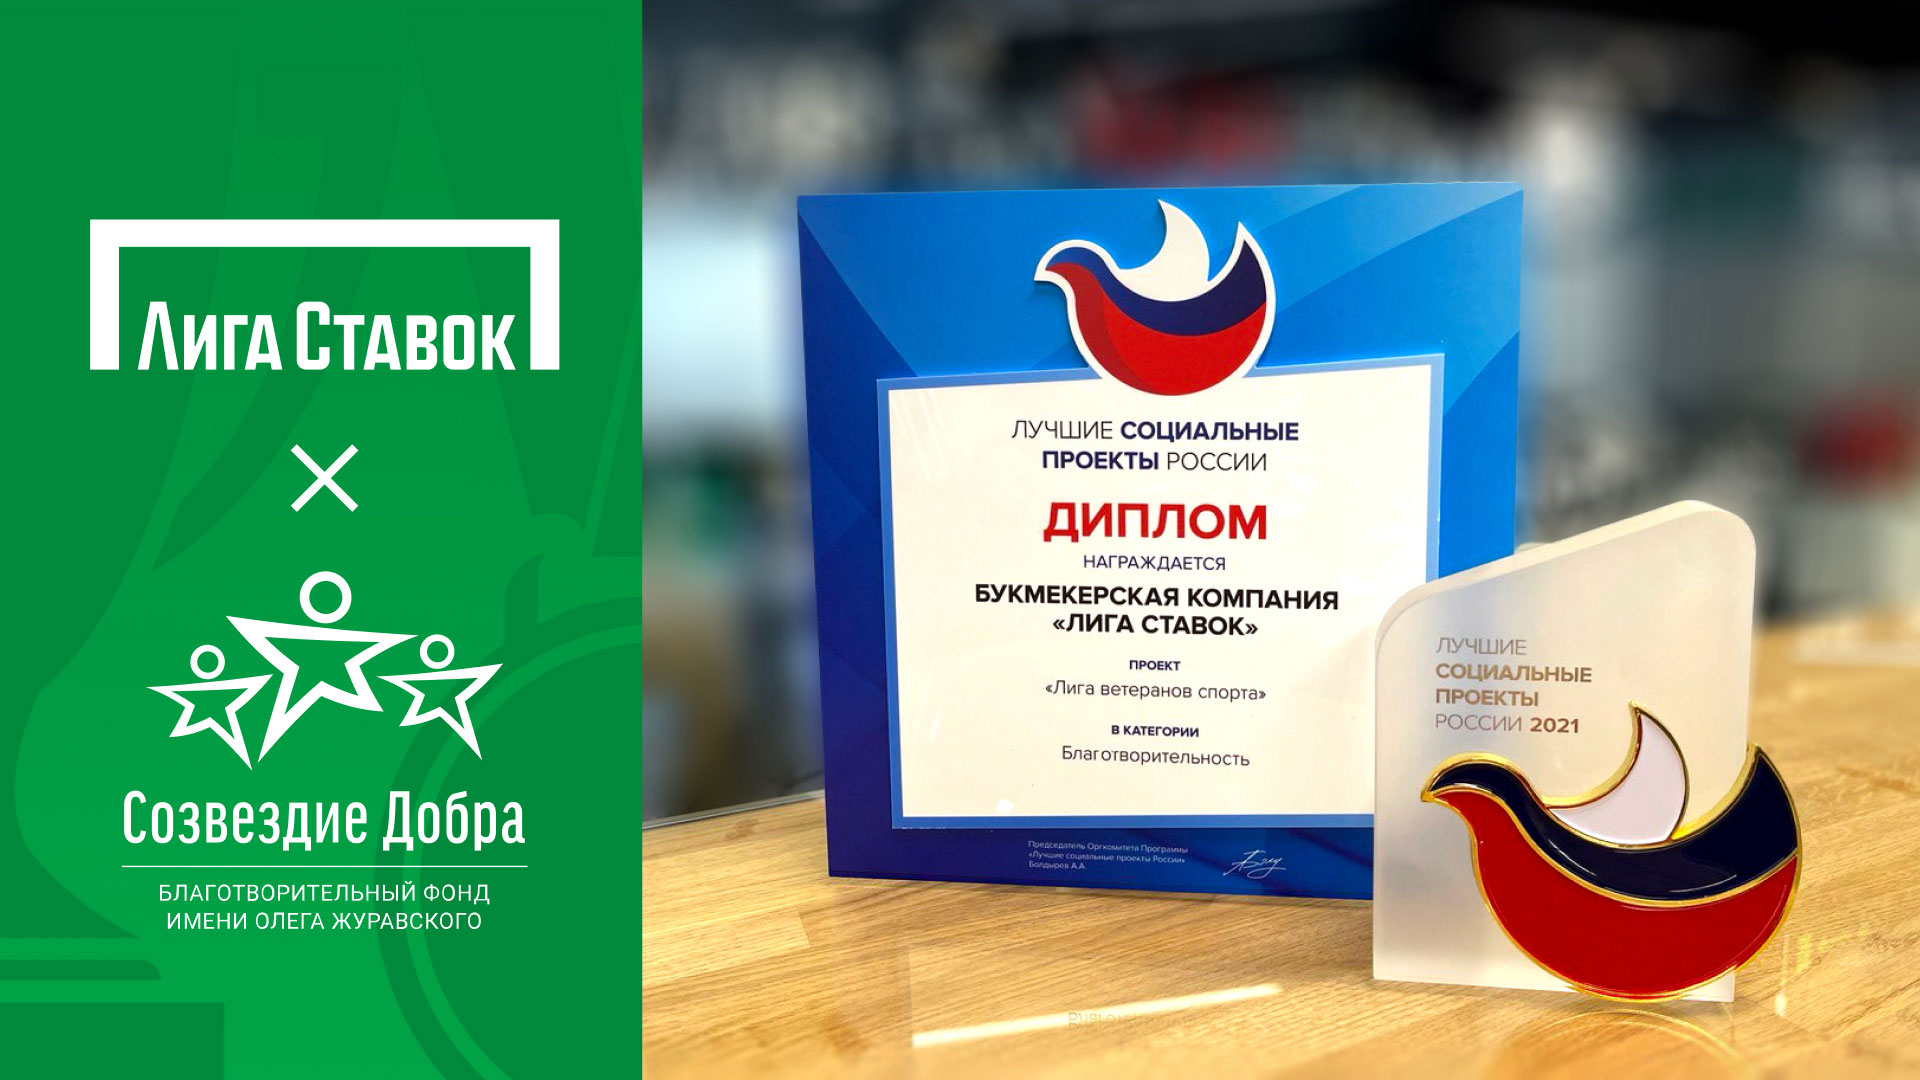 «Лига ветеранов спорта» признана лучшим социальным проектом России - фото